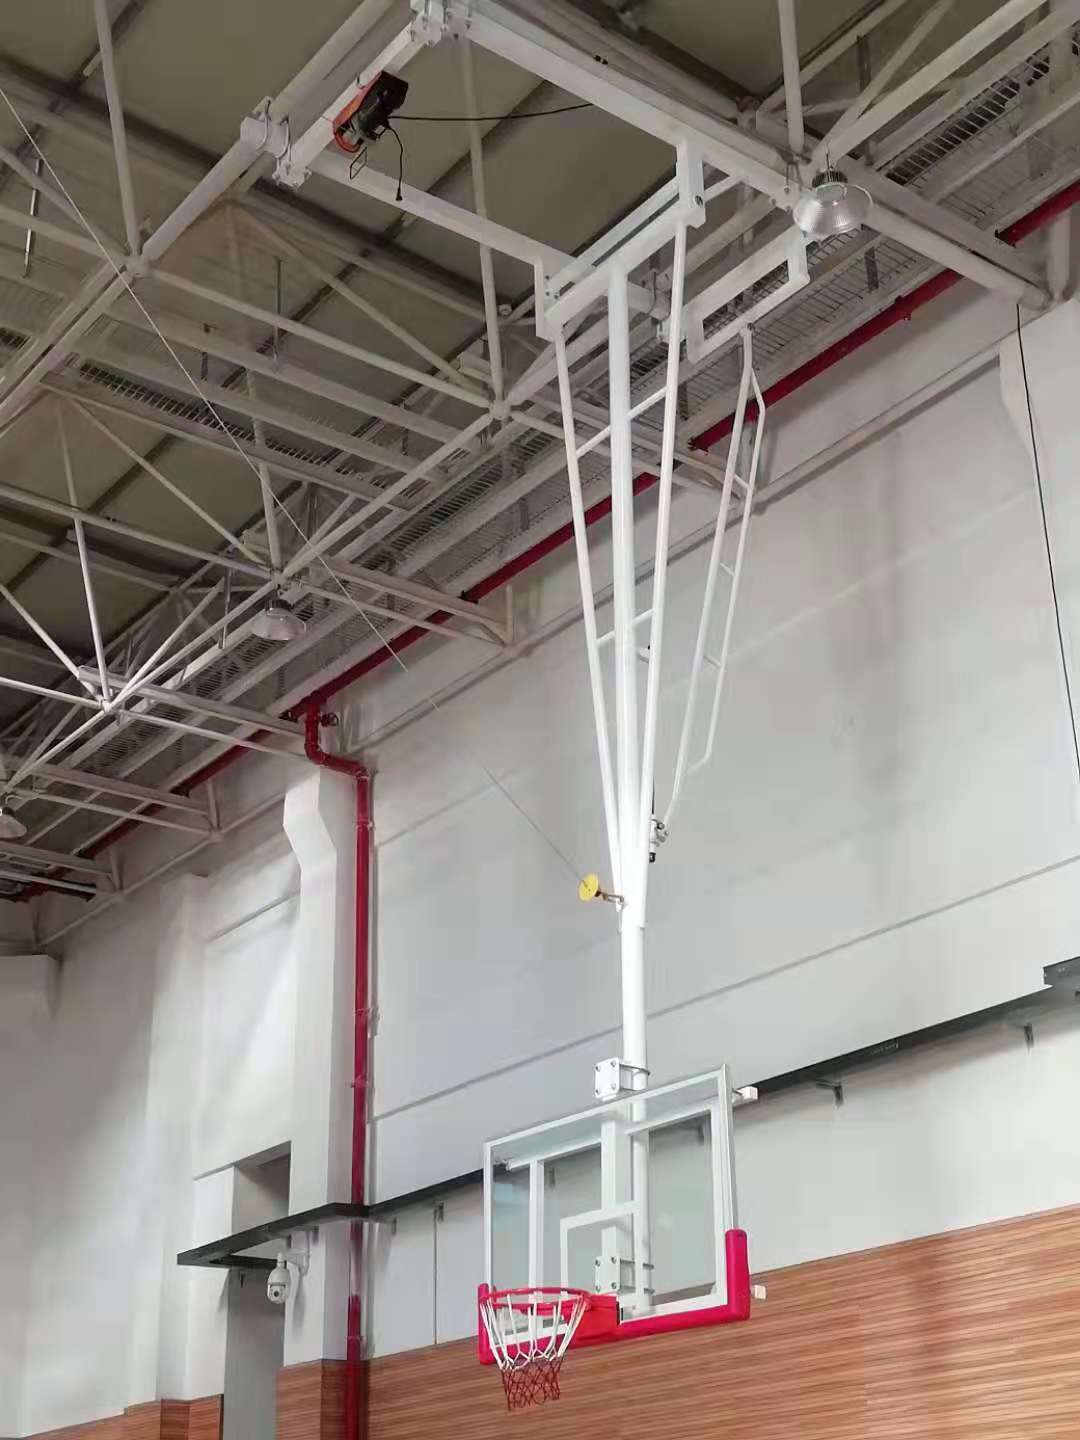 悬空电动折叠篮球架厂家 悬空电动折叠篮球架价格 悬空电动折叠篮球架哪里有  悬空电动折叠篮球架批发 电动折叠篮球架电话图片